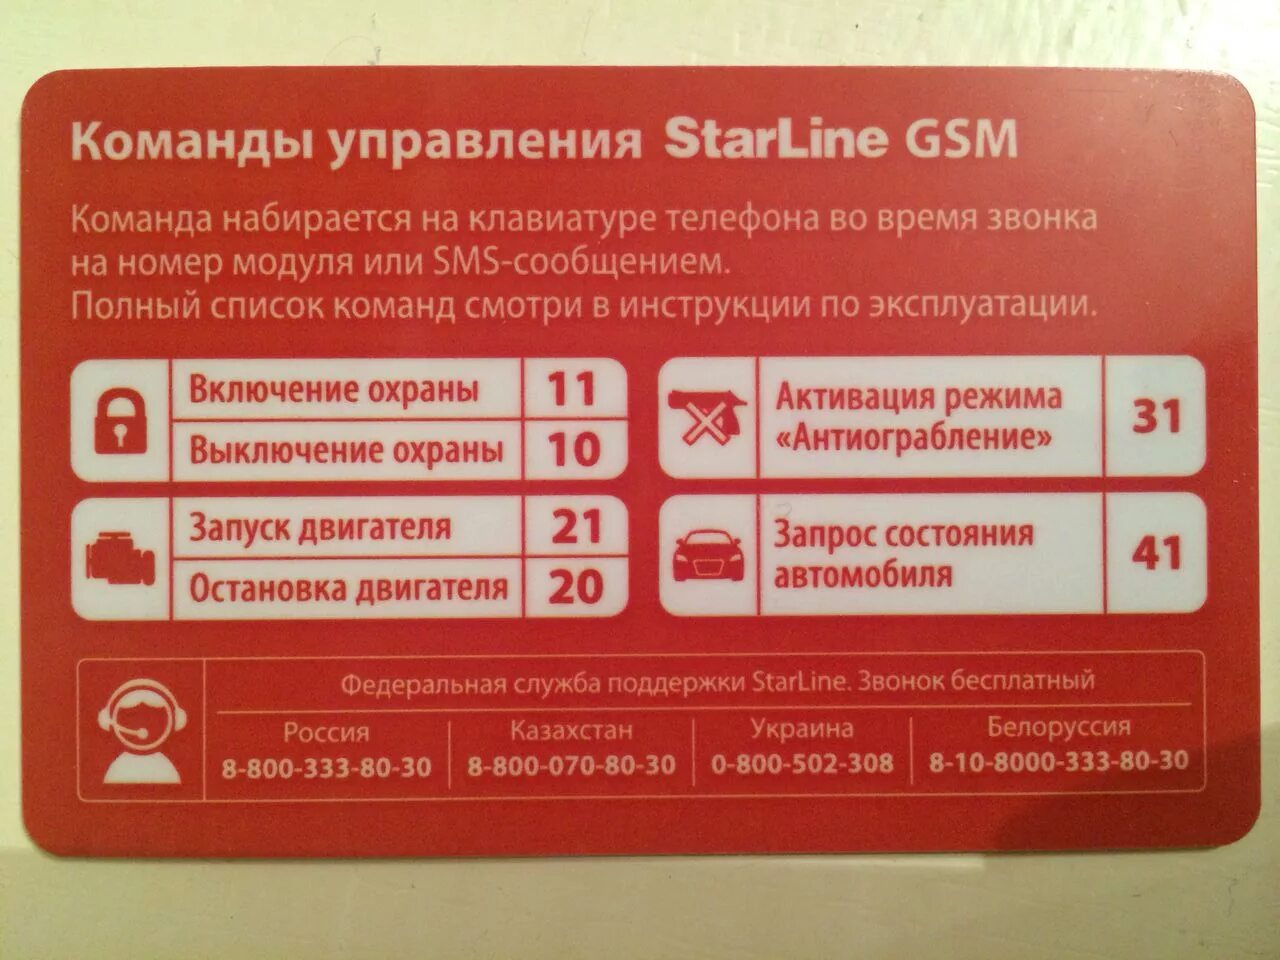 Старлайн а93 GSM модуль. Коды команд старлайн GSM а93. SMS команды STARLINE a93. Komandi upravleniya STARLINE GSM а93. Старлайн команды с телефона